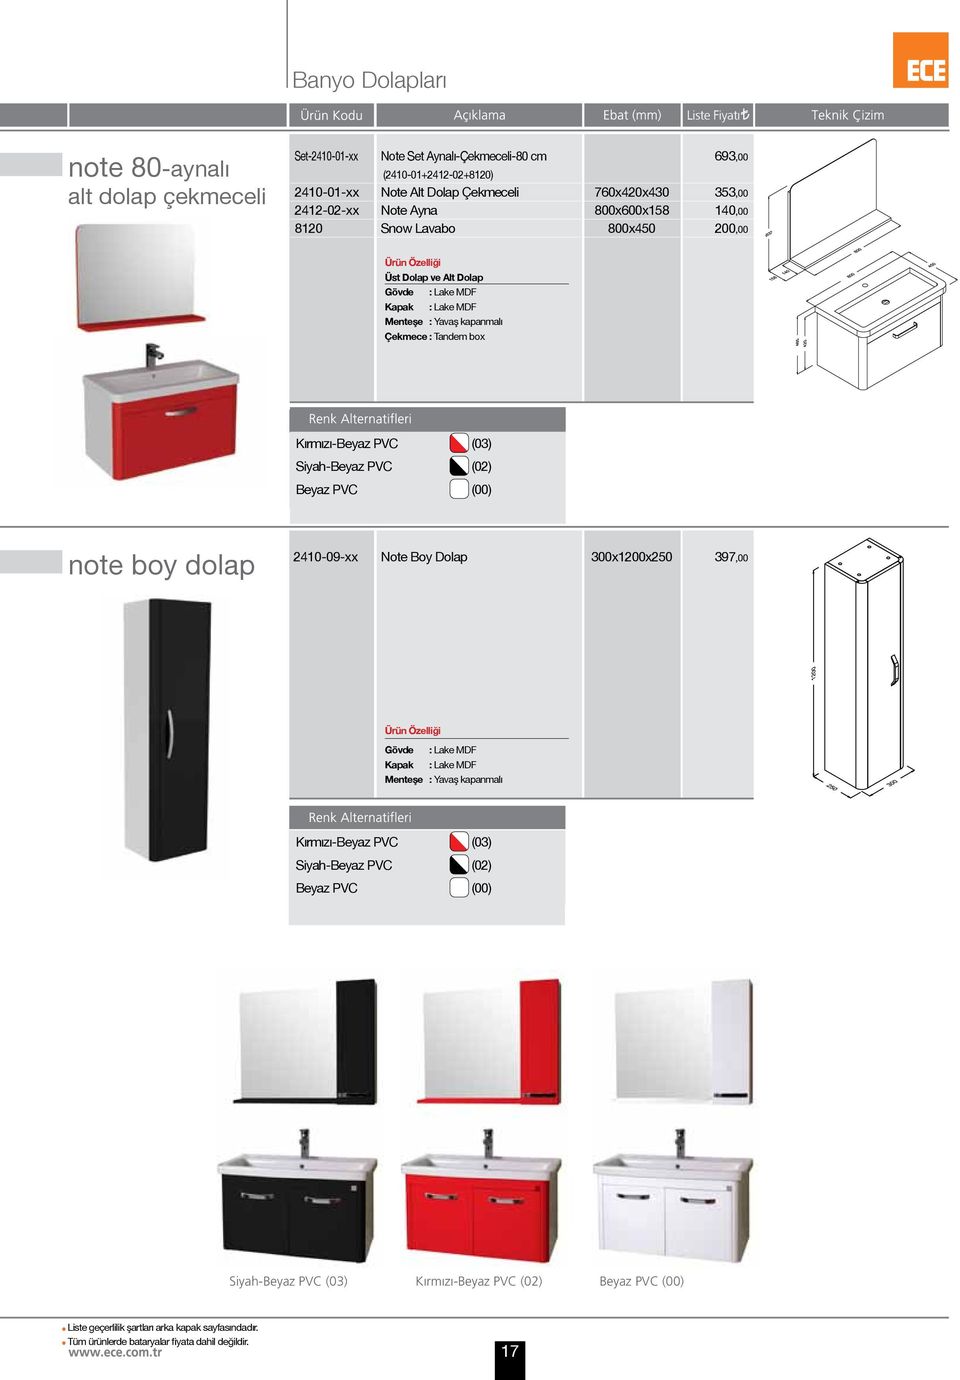 Tandem box Kırmızı-Beyaz PVC (03) Siyah-Beyaz PVC (02) Beyaz PVC (00) note boy dolap 2410-09-xx Note Boy Dolap 300x1200x250 397,00 Gövde :